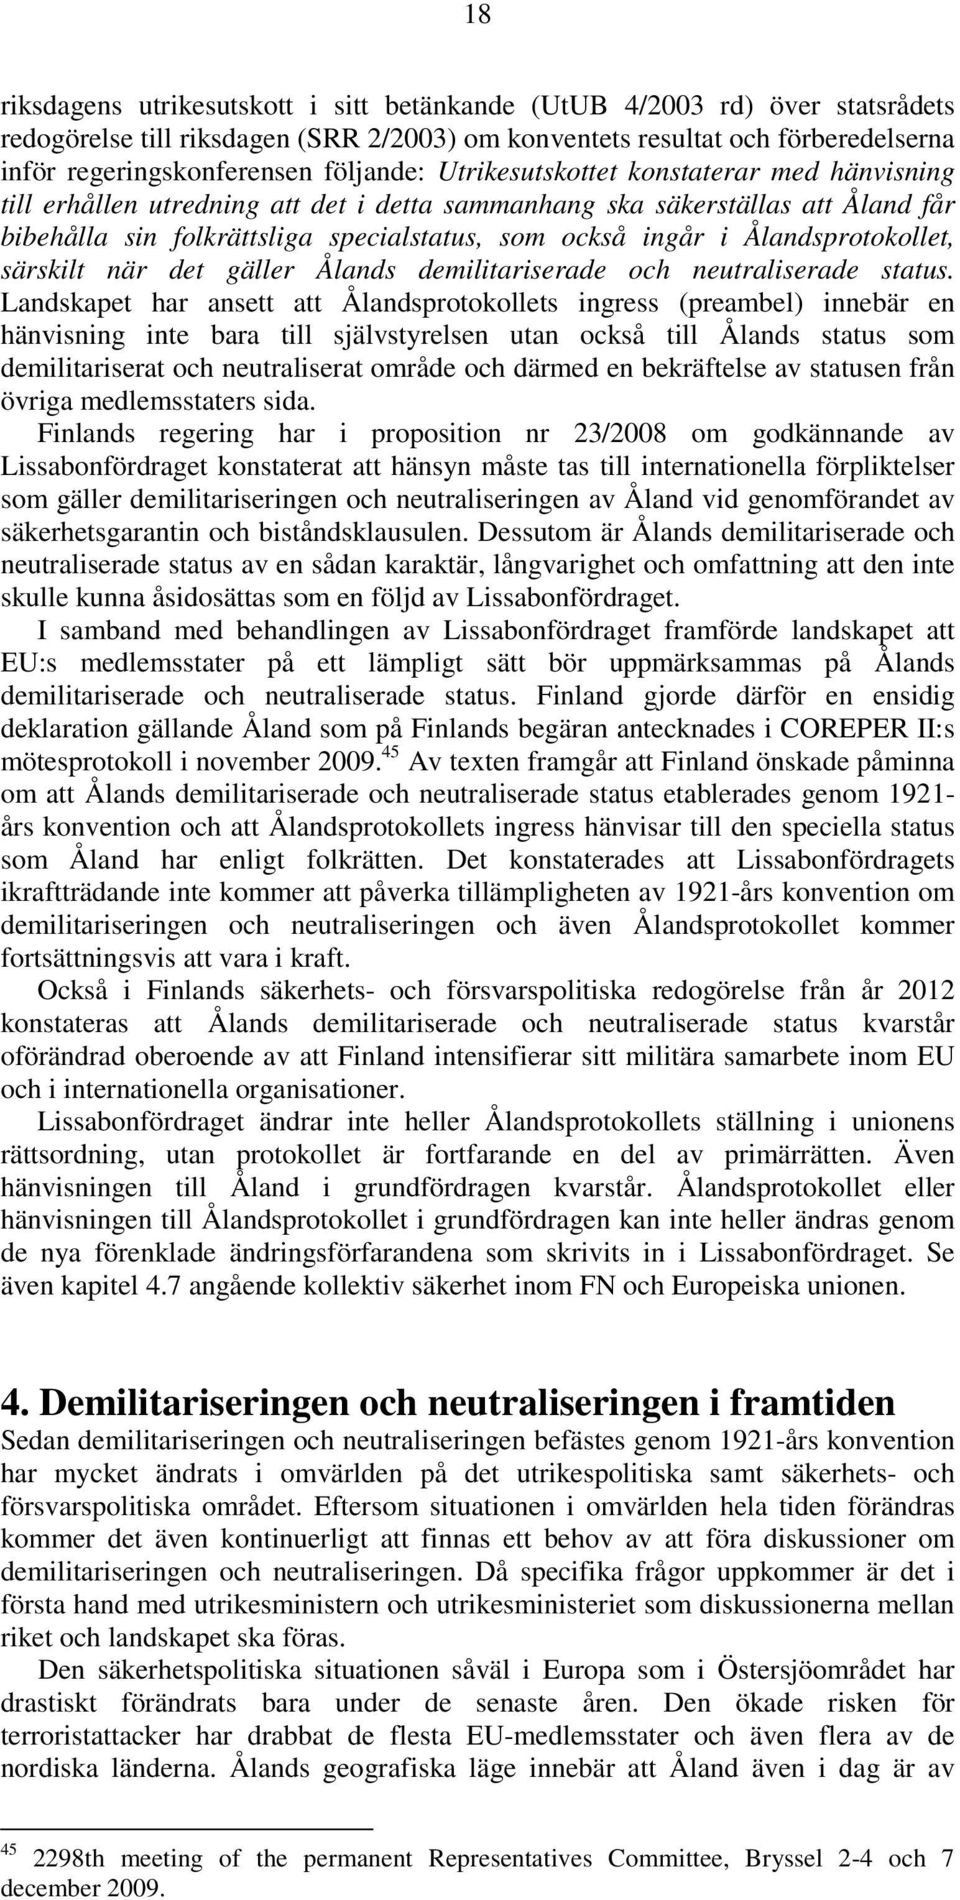 Ålandsprotokollet, särskilt när det gäller Ålands demilitariserade och neutraliserade status.